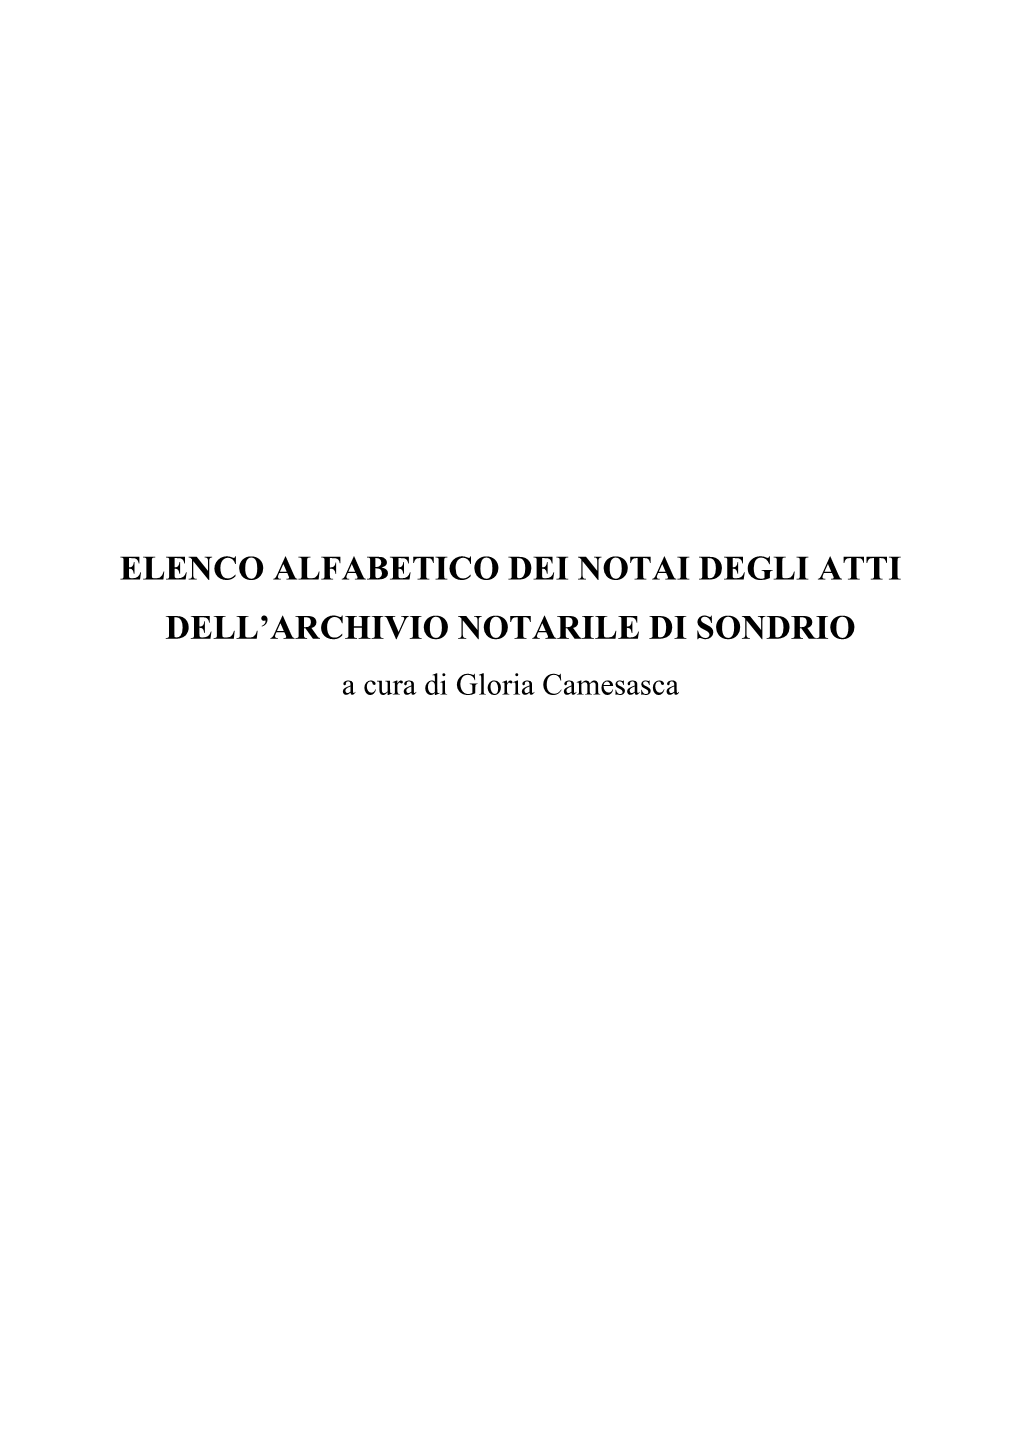 ELENCO ALFABETICO DEI NOTAI DEGLI ATTI DELL’ARCHIVIO NOTARILE DI SONDRIO a Cura Di Gloria Camesasca